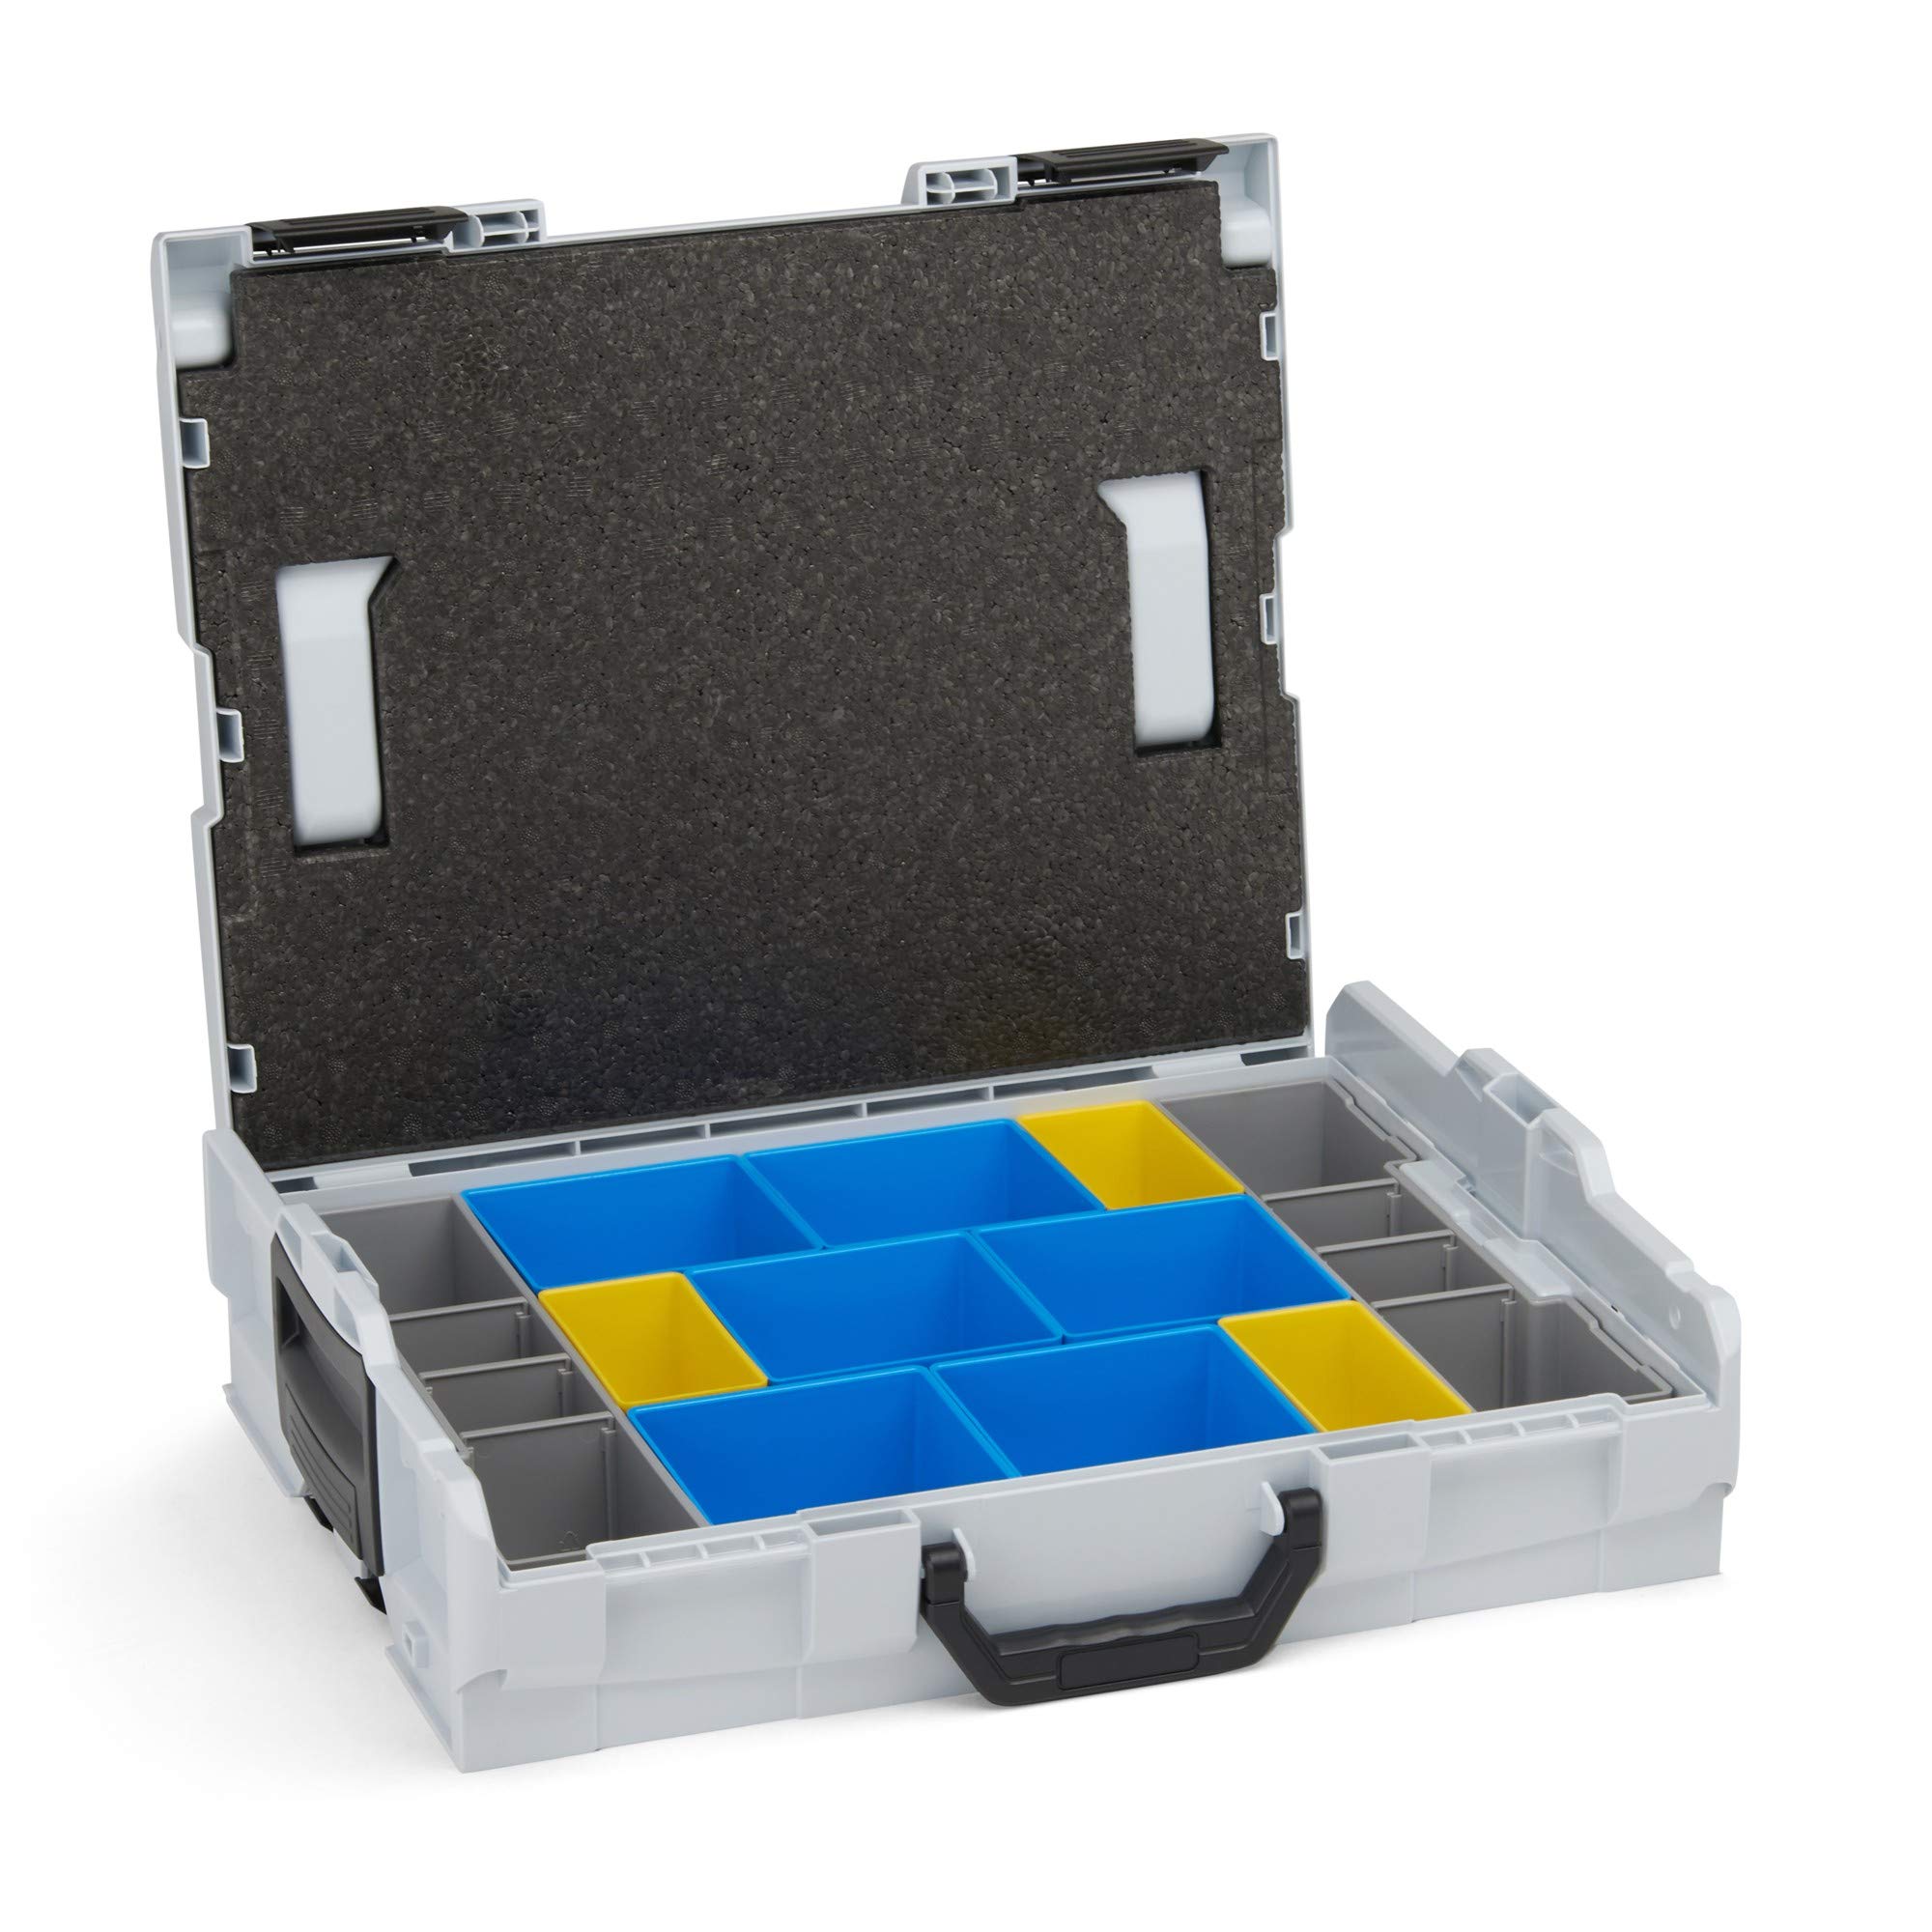 Werkzeug Organizer Box | L-BOXX 102 (grau) mit Insetboxenset BC3 | Profi Werkzeugkoffer leer inkl. Sortimentskasten Einsätze